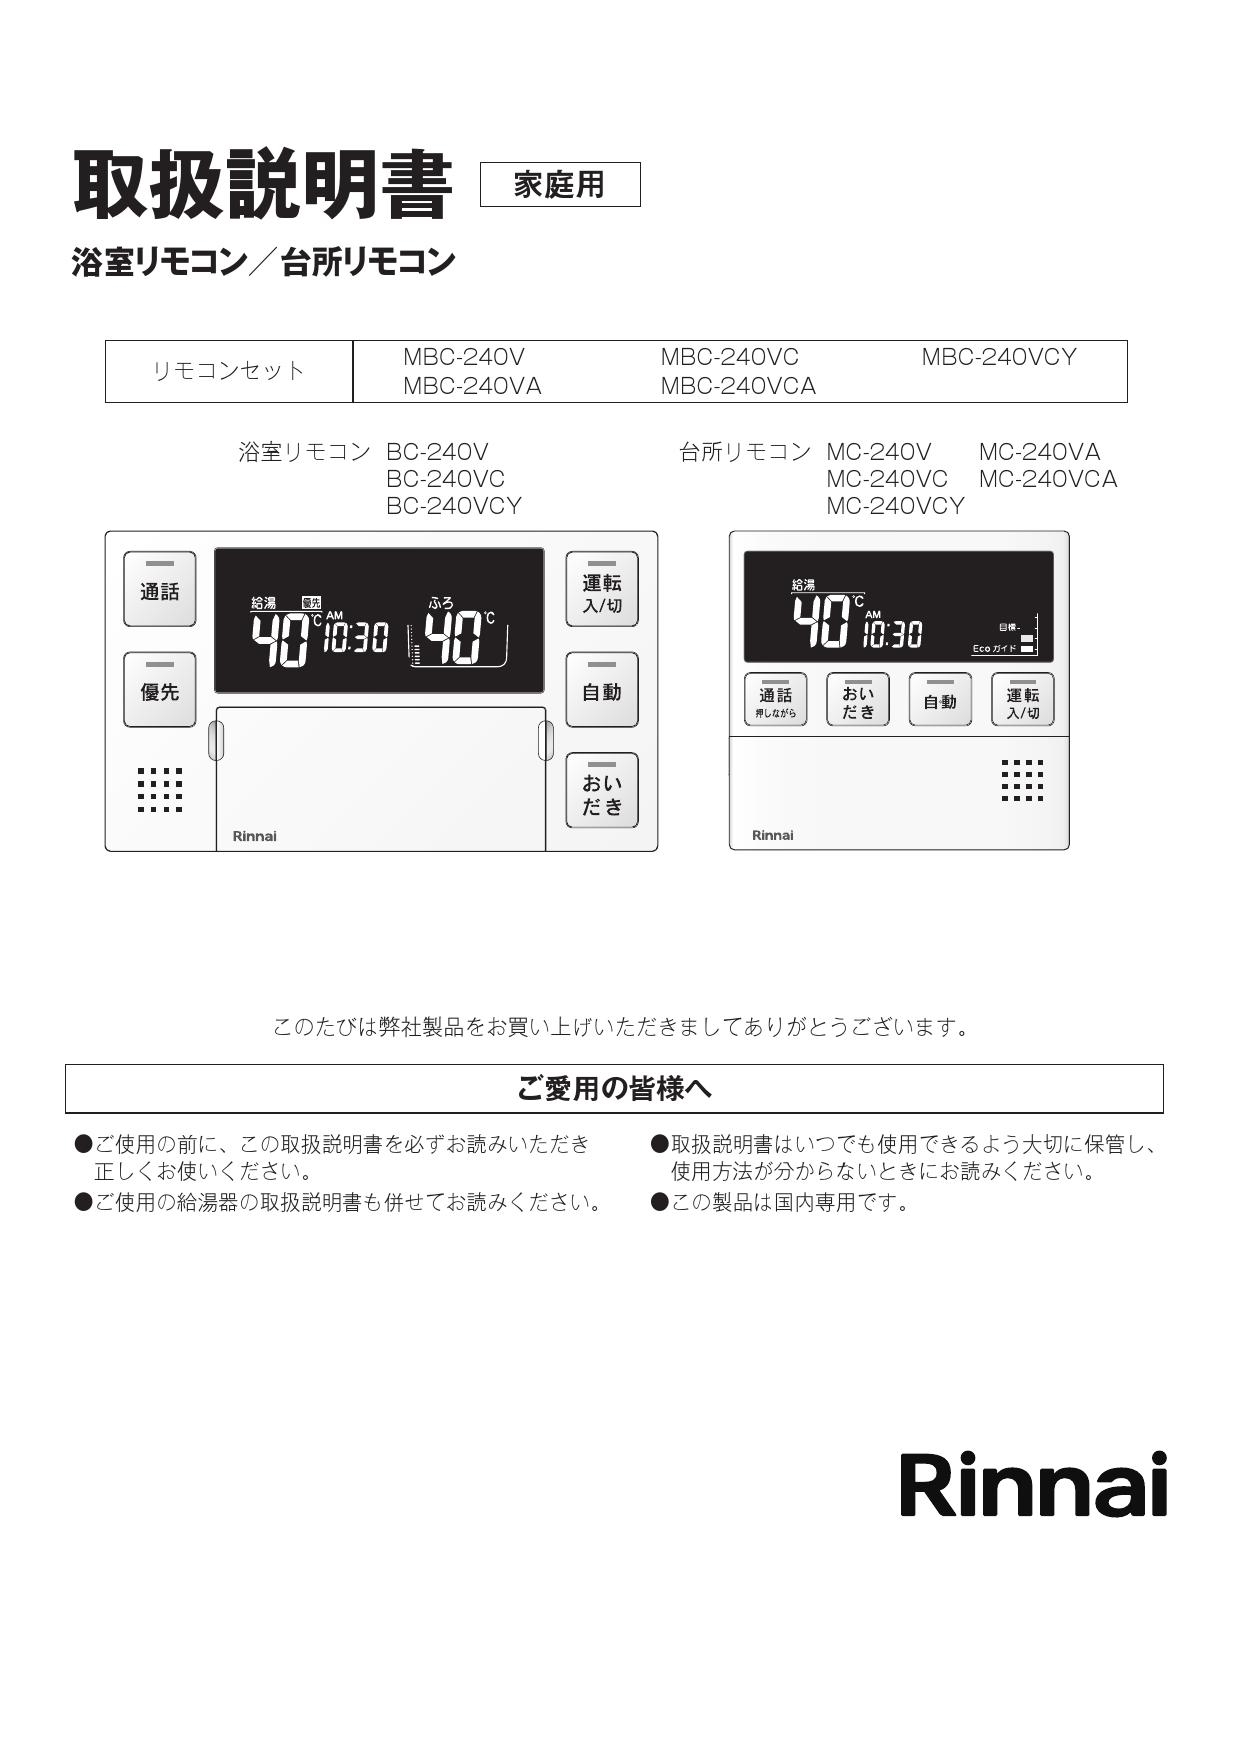 誠実】 MBC-MB240VC A <br>MBC-240シリーズ リンナイ セットリモコン 品名コード 